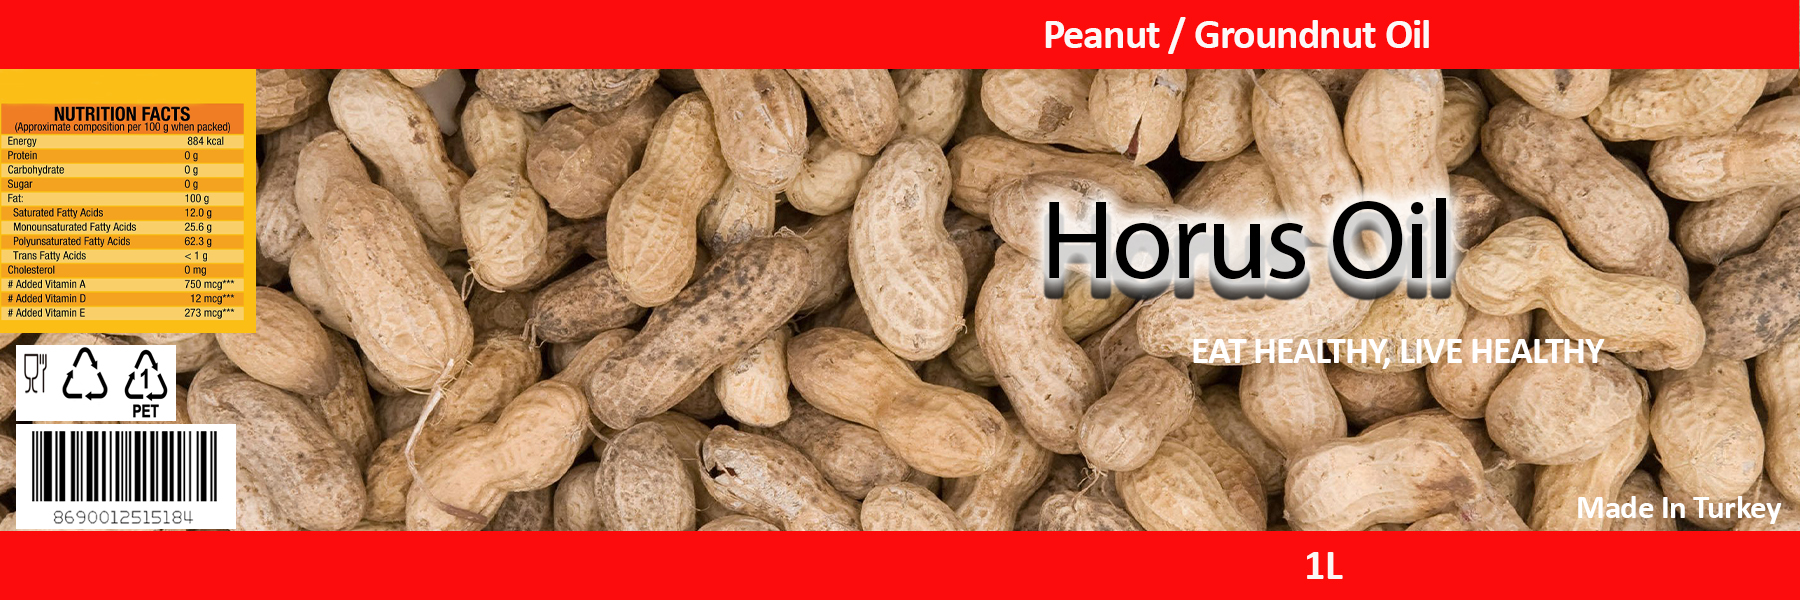 Peanut / Groundnut Oil